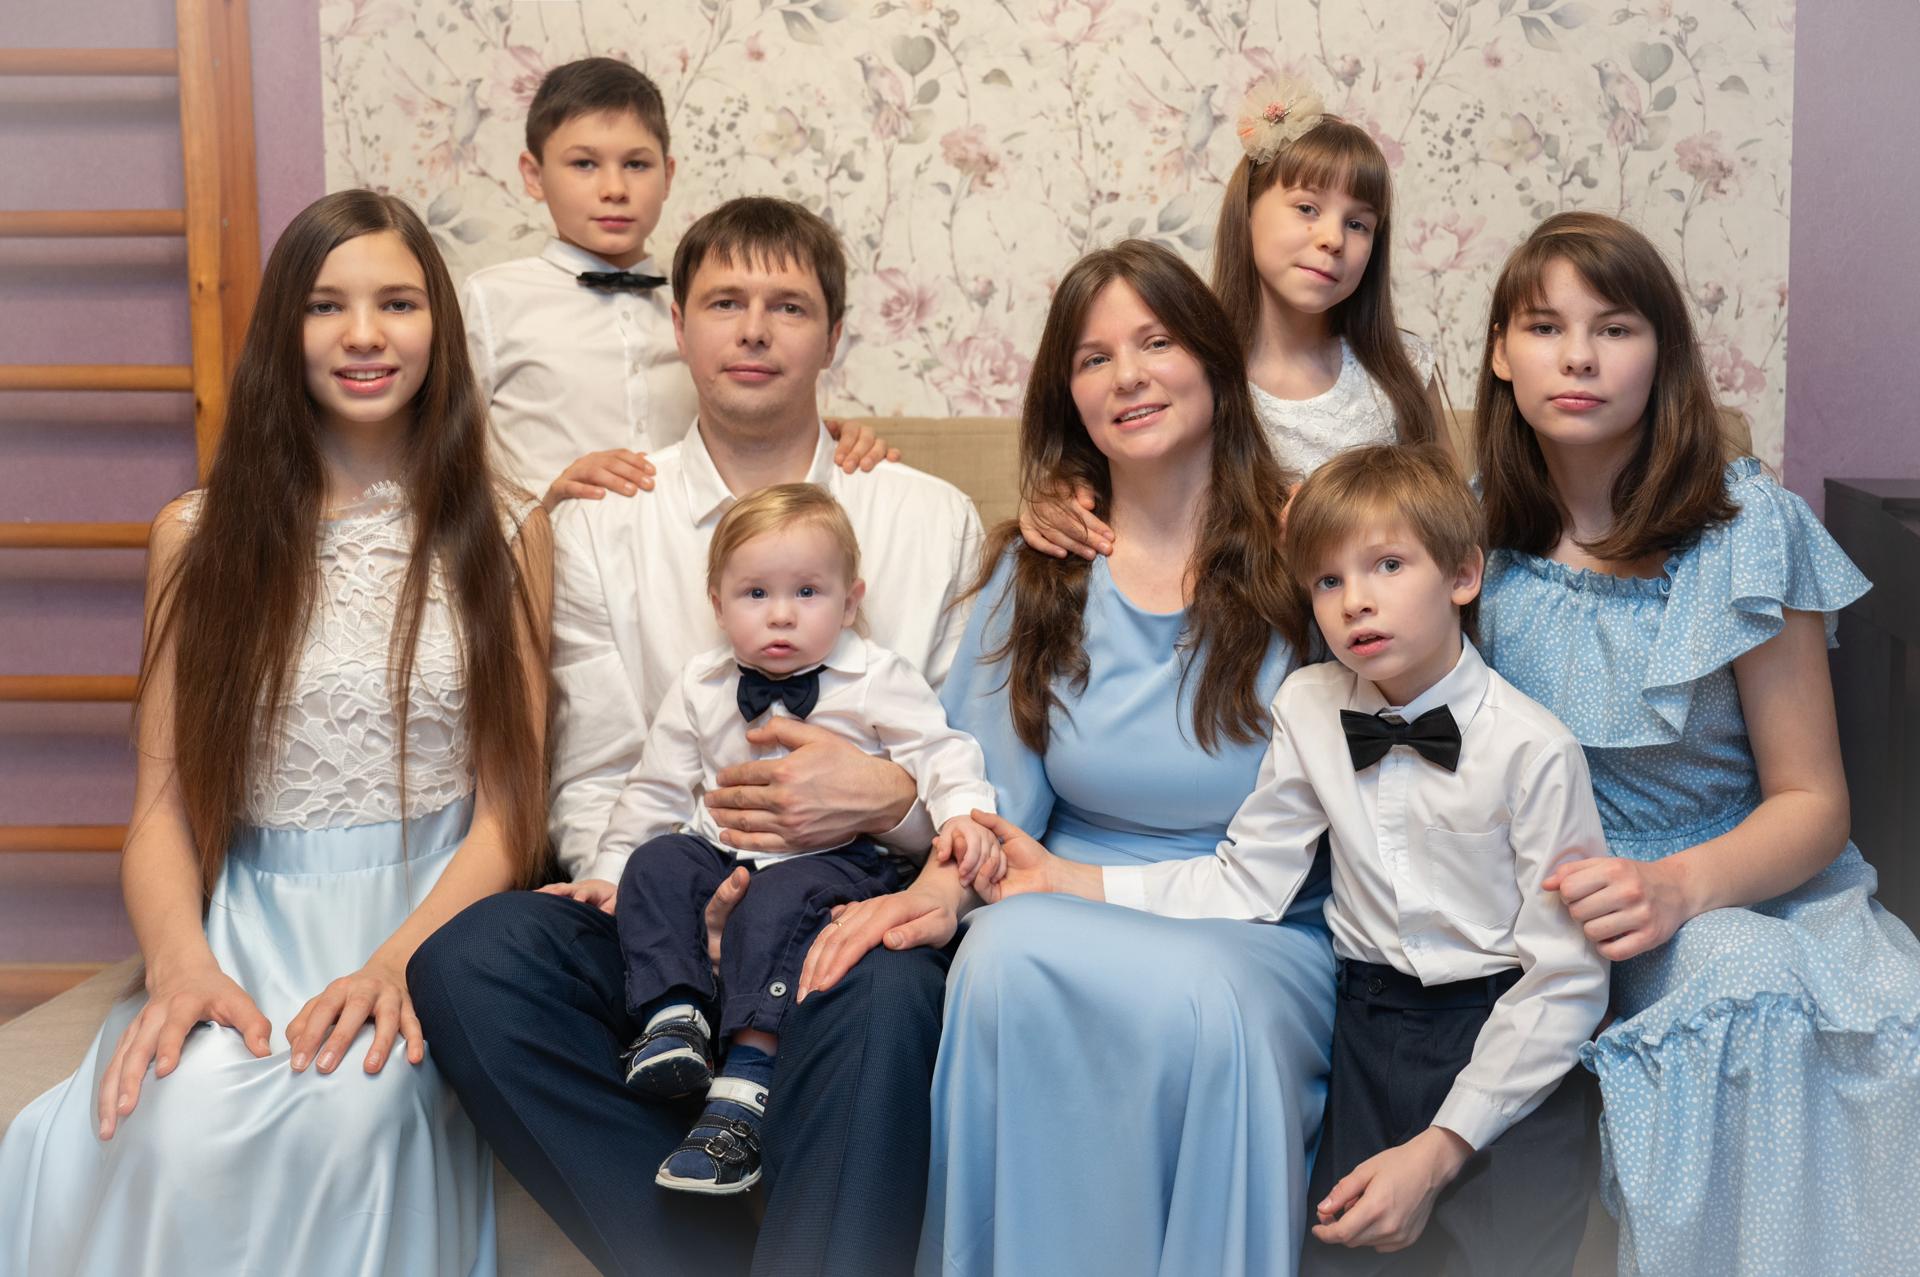 Оплата образования, ремонт квартир, газификация: Красногорские семьи воспользовались сертификатами регионального материнского капитала